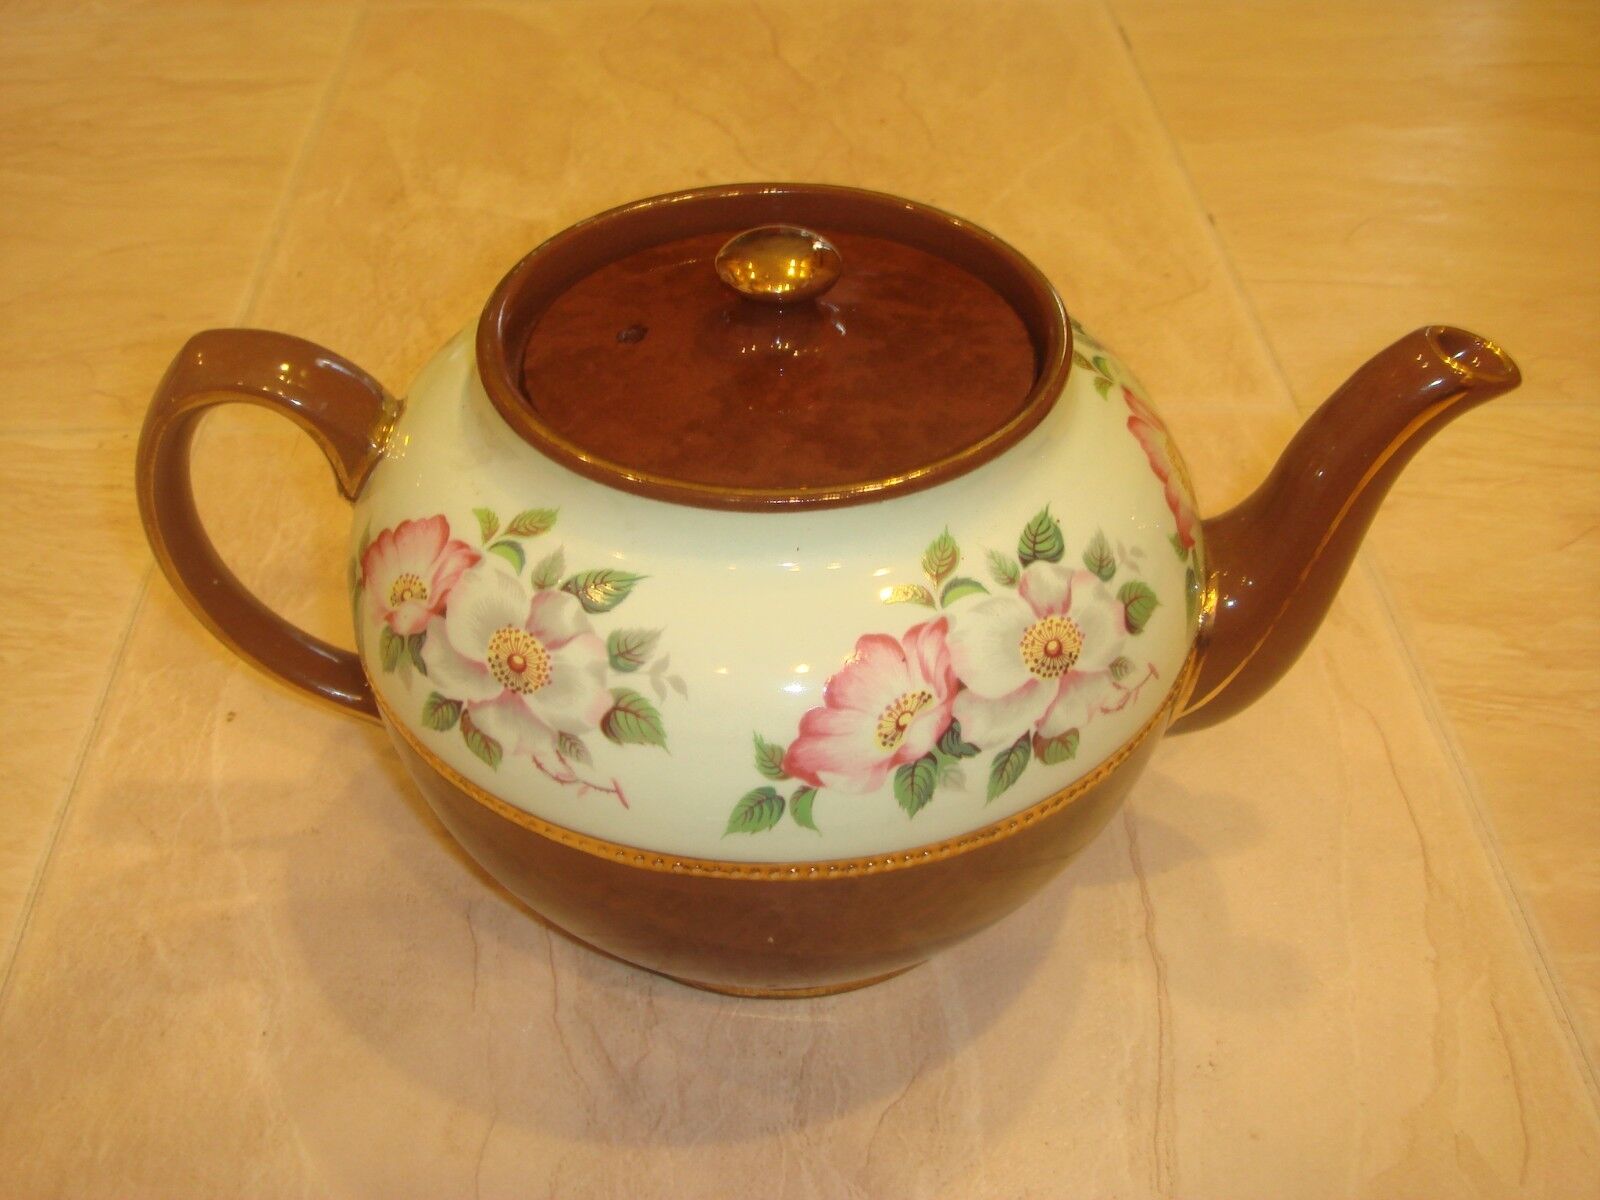 Vintage Sadler brown and mint floral teapot